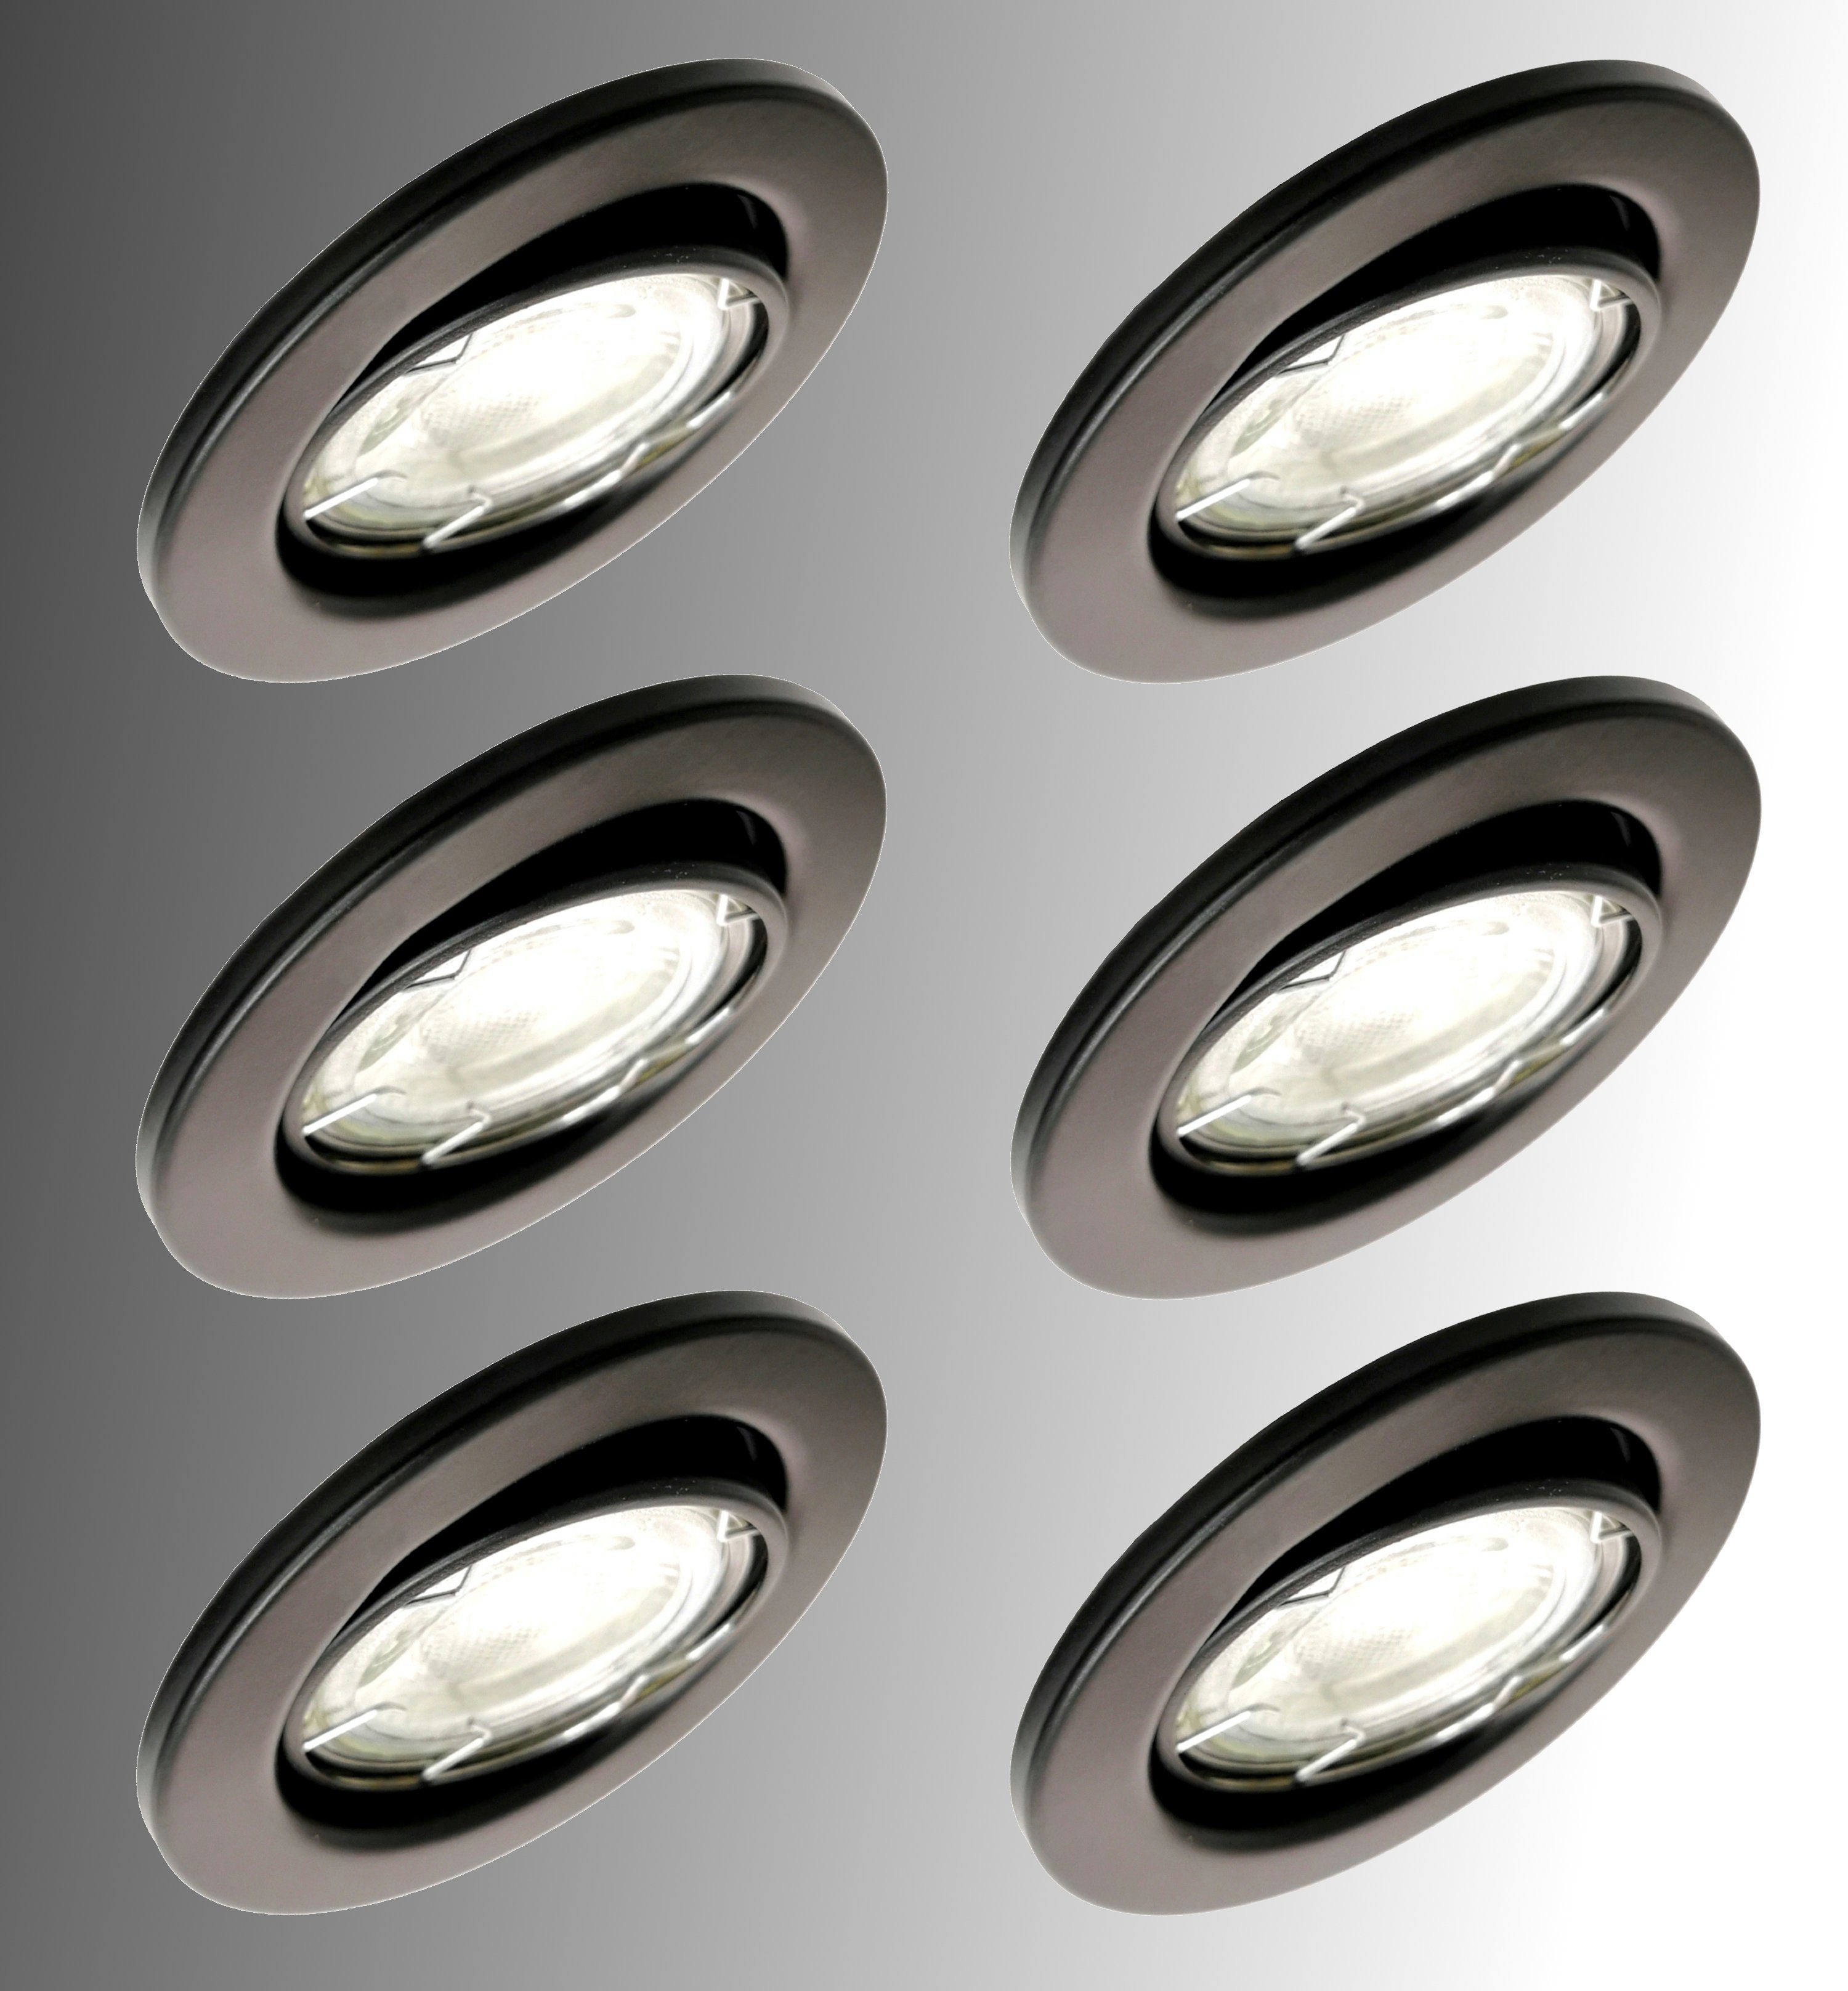 6x LED Einbauleuchte Dimmbar Einbaustrahler Deckenspot rund 5W 220-240V 